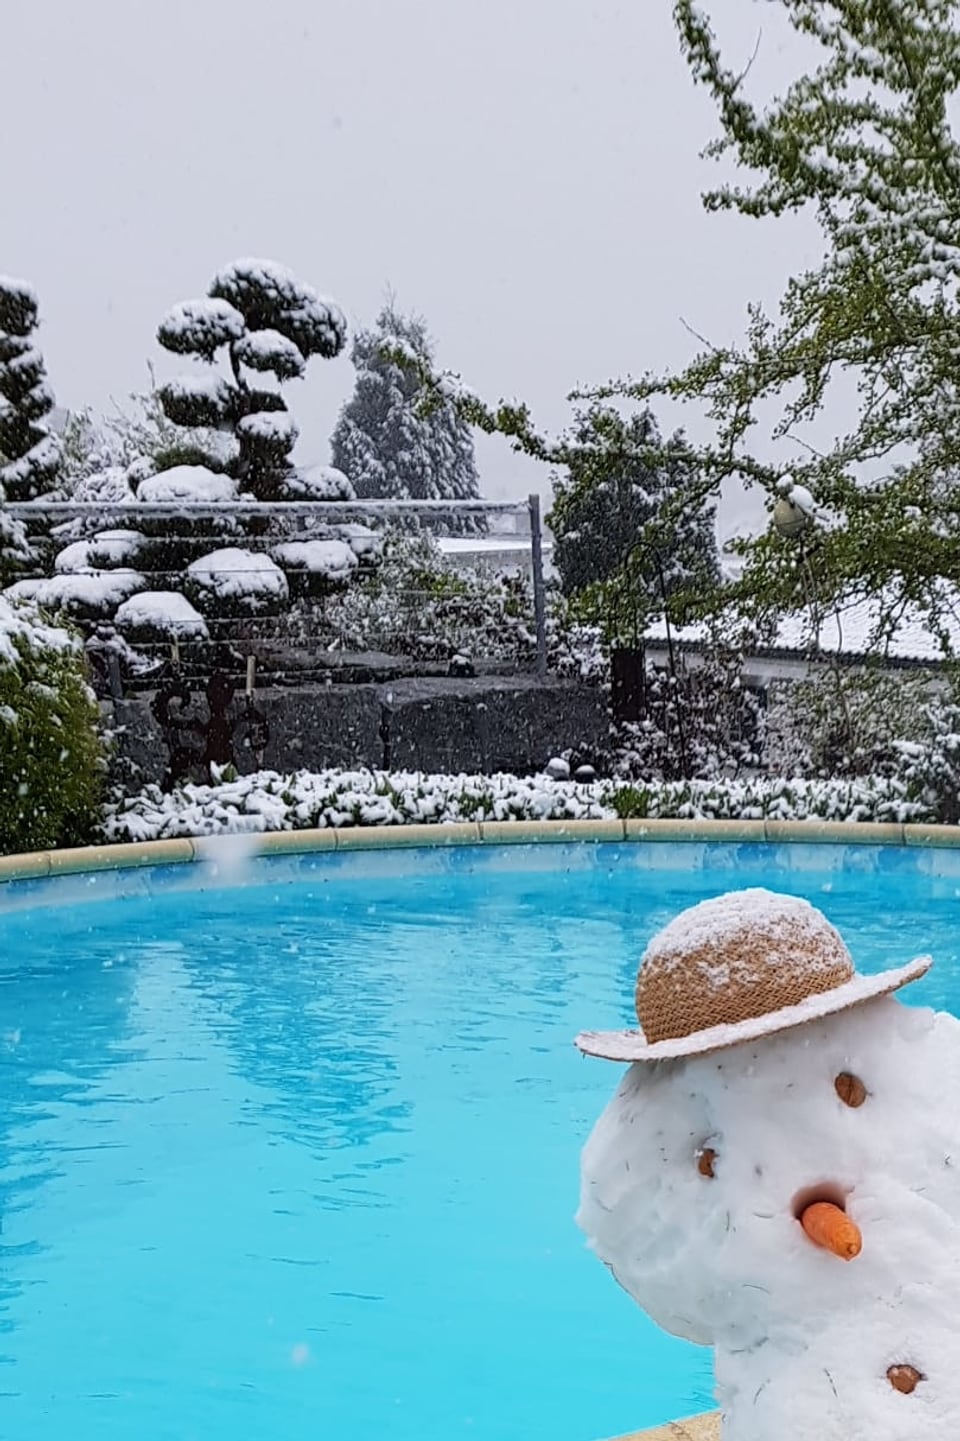 Schneemann an einem Pool.